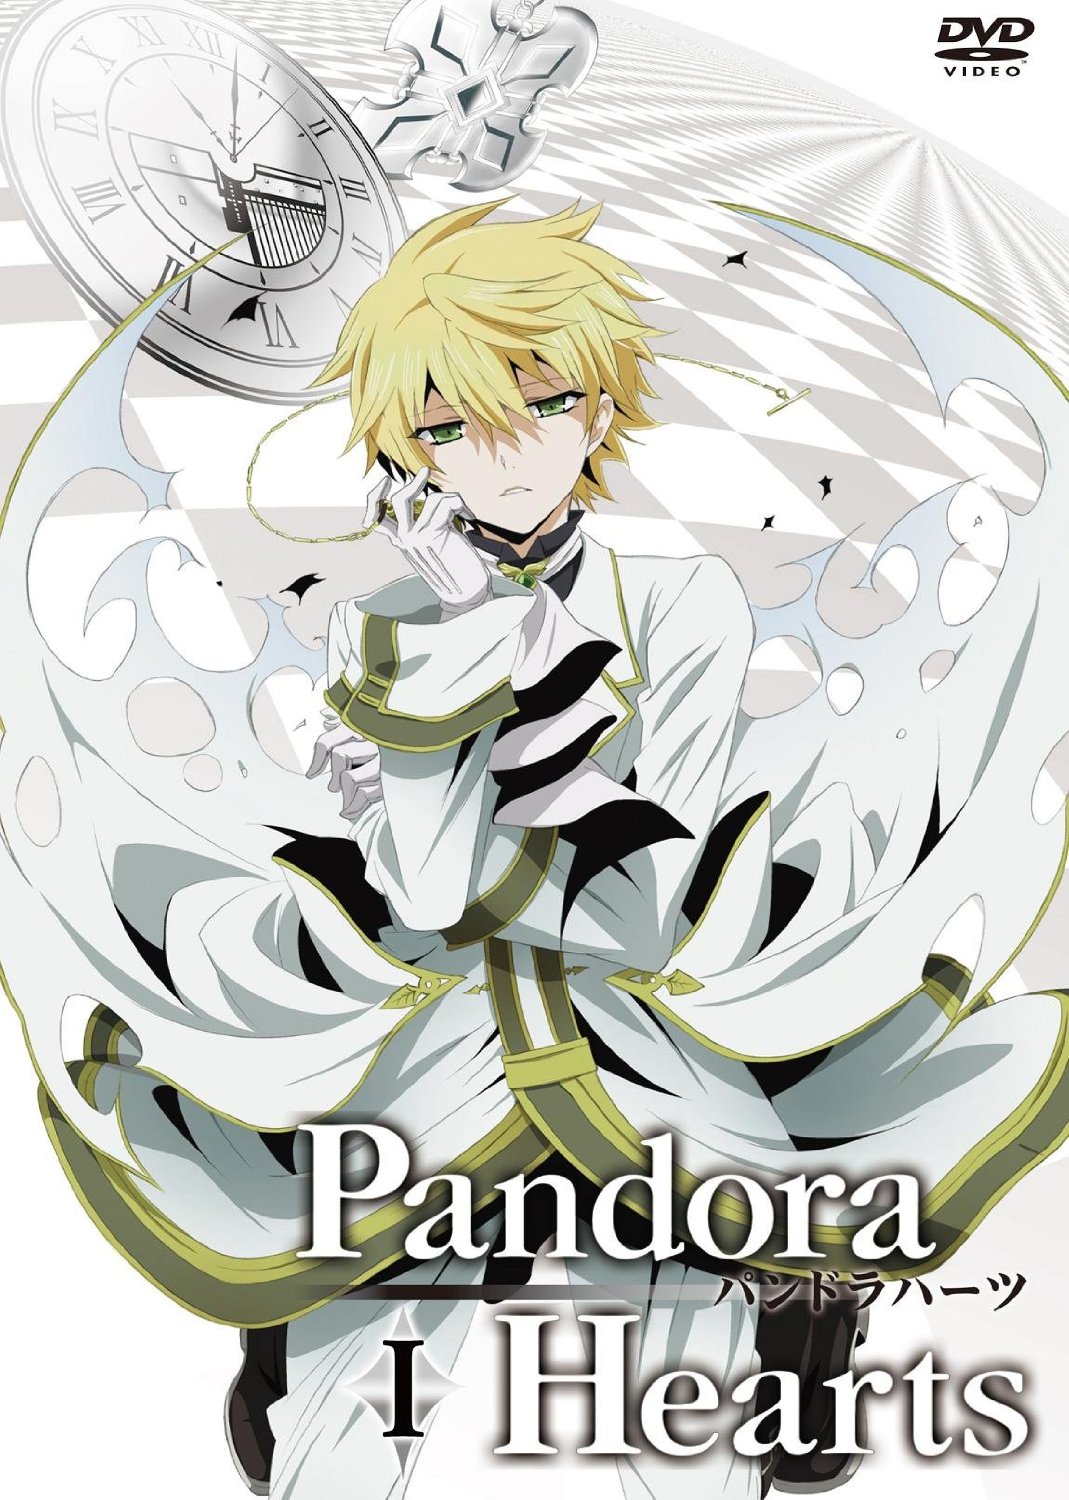 ダークファンタジー漫画 Pandora Hearts が面白い Renote リノート